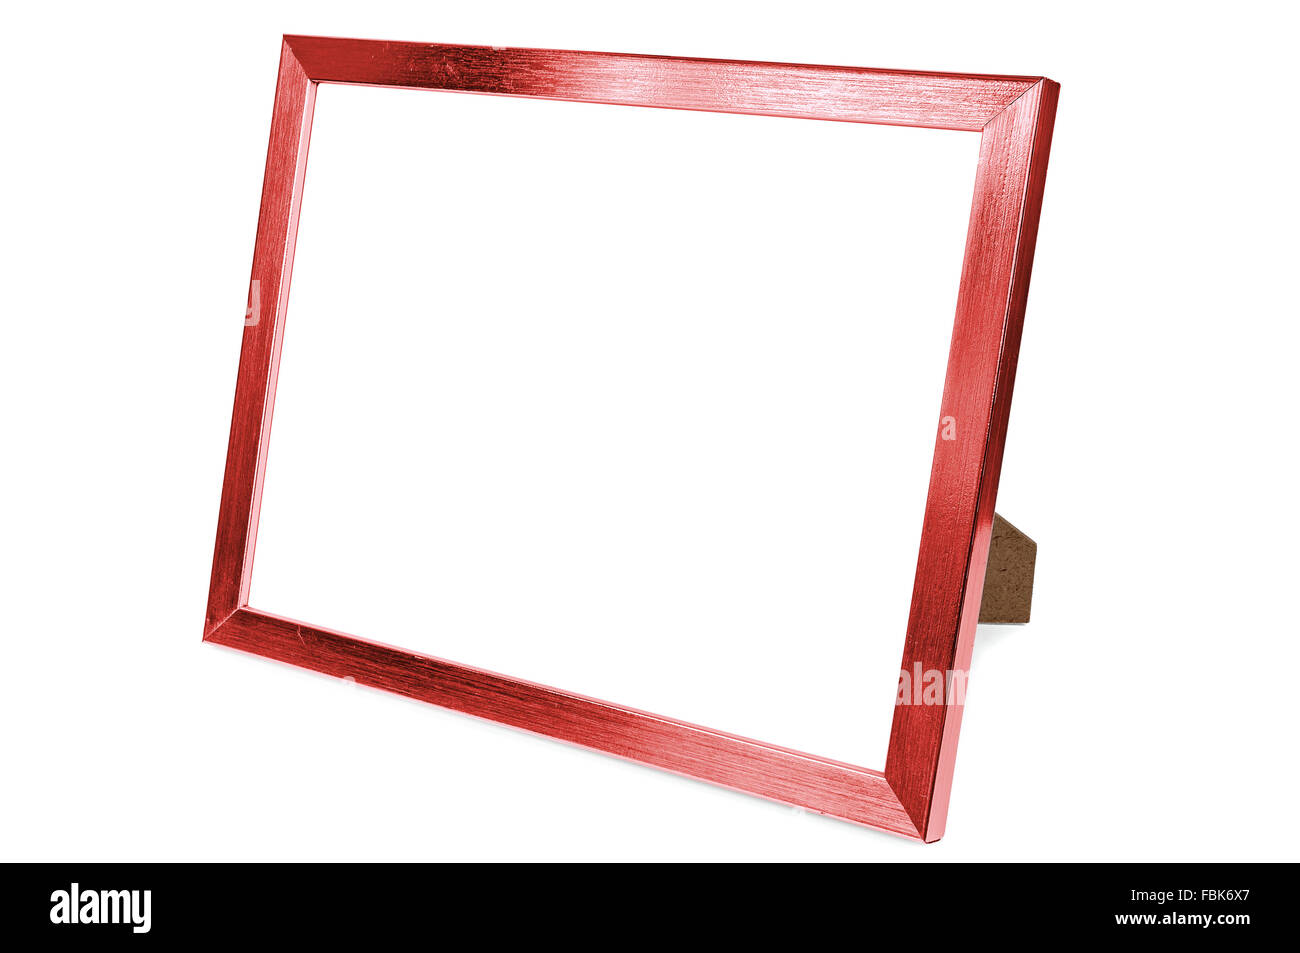 In alluminio rosso vuoto photo frame isolati su sfondo bianco con tracciato di ritaglio Foto Stock